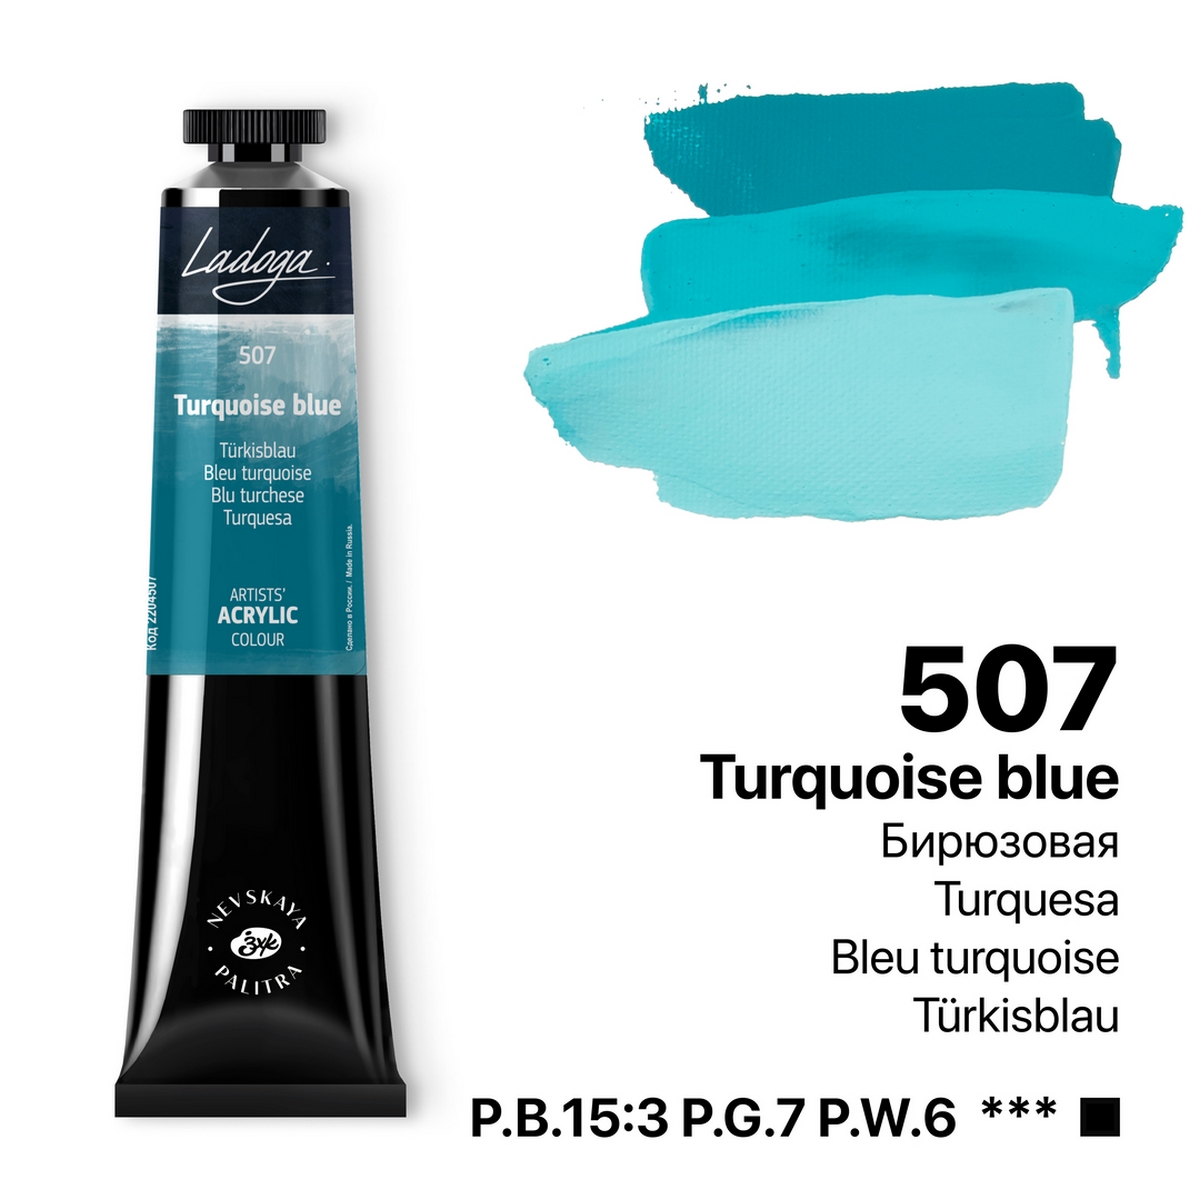 Acrylic colour Ladoga, Turquoise blue, № 507